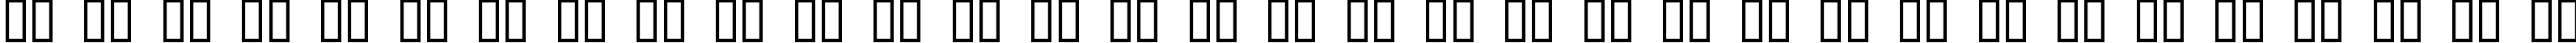 Пример написания русского алфавита шрифтом Patterns & Dots